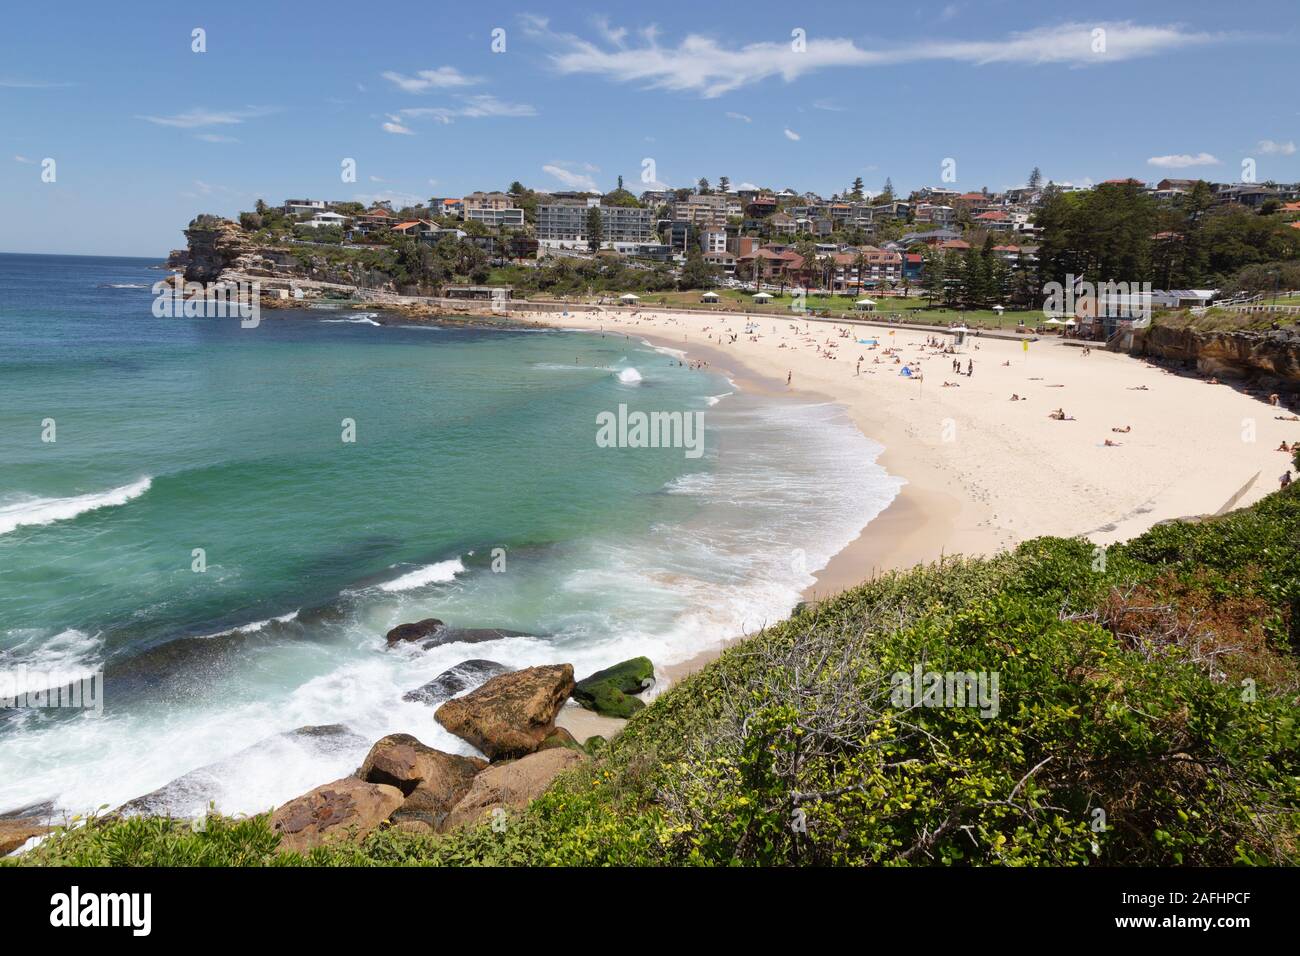 Plages de Sydney - Bronte Beach, Sydney Australie - les gens sur la plage lors d'une journée ensoleillée en été, Sydney Australie Banque D'Images